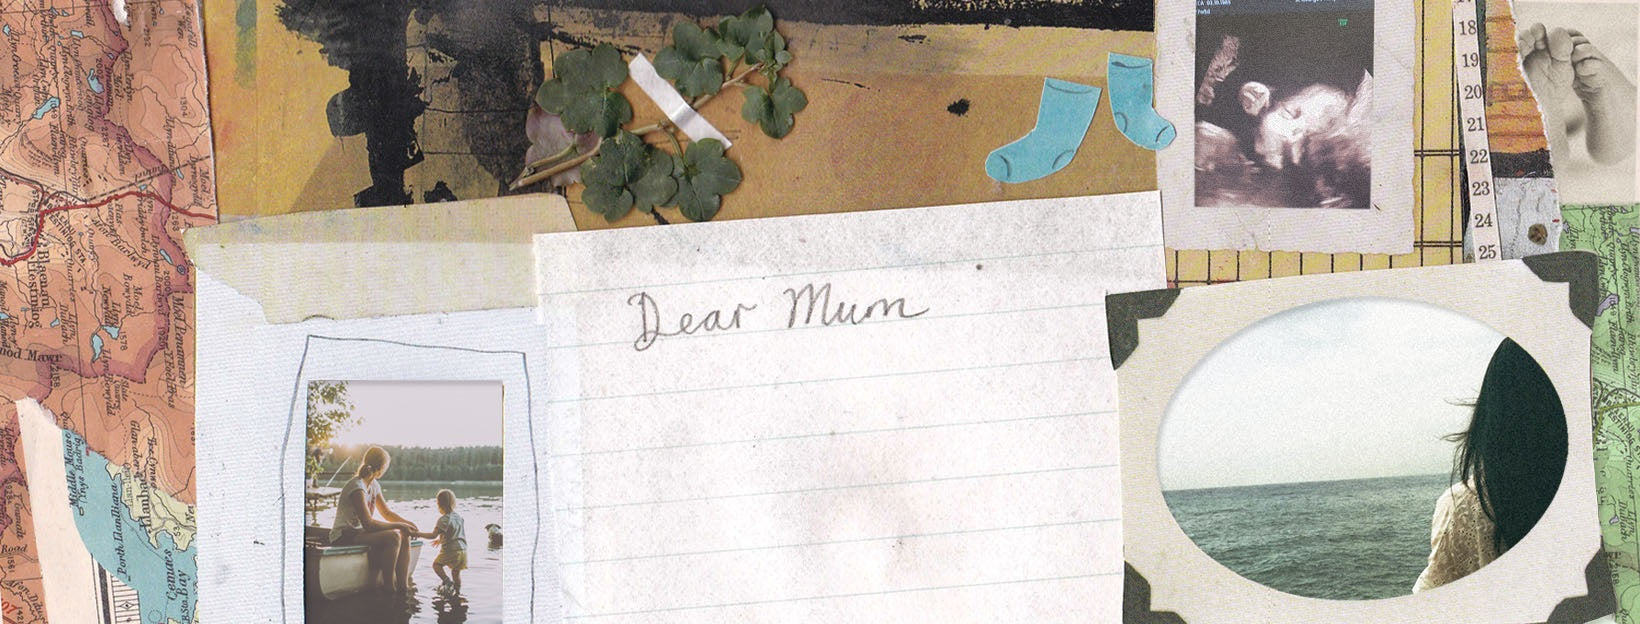 Dear mum